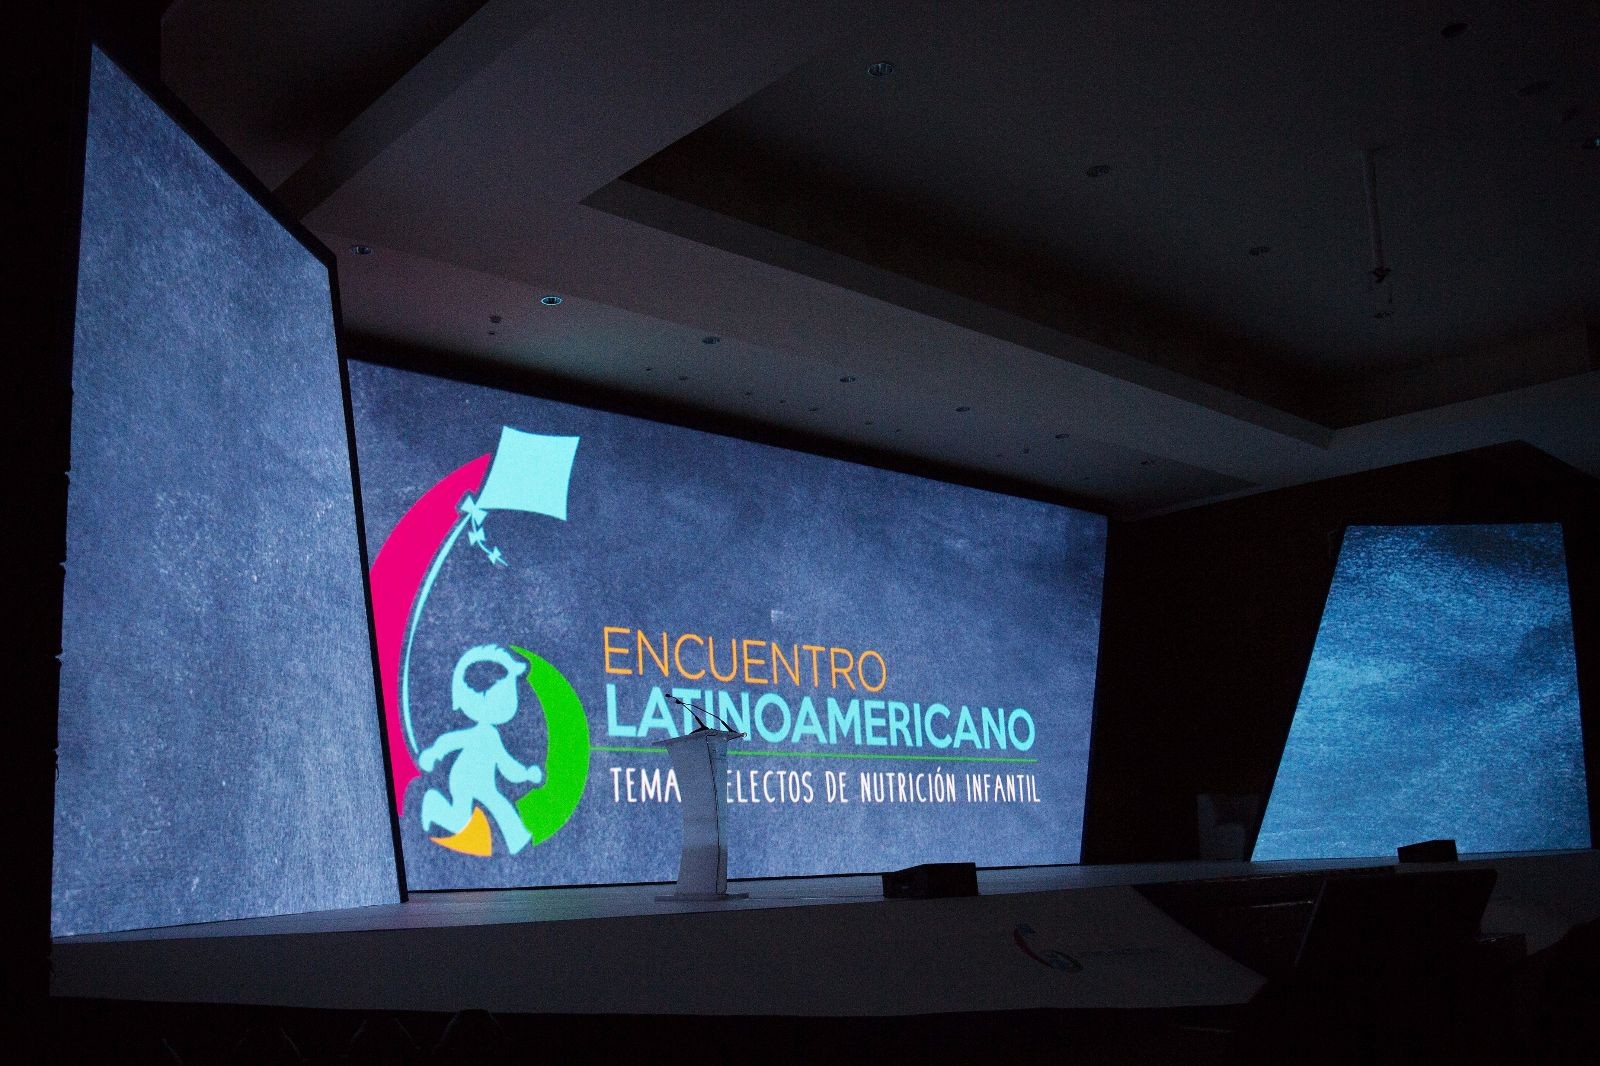 Médicos especialistas de Latinoamérica se reunieron en el 6º Encuentro Latinoamericano, Temas Selectos de Nutrición Infantil.